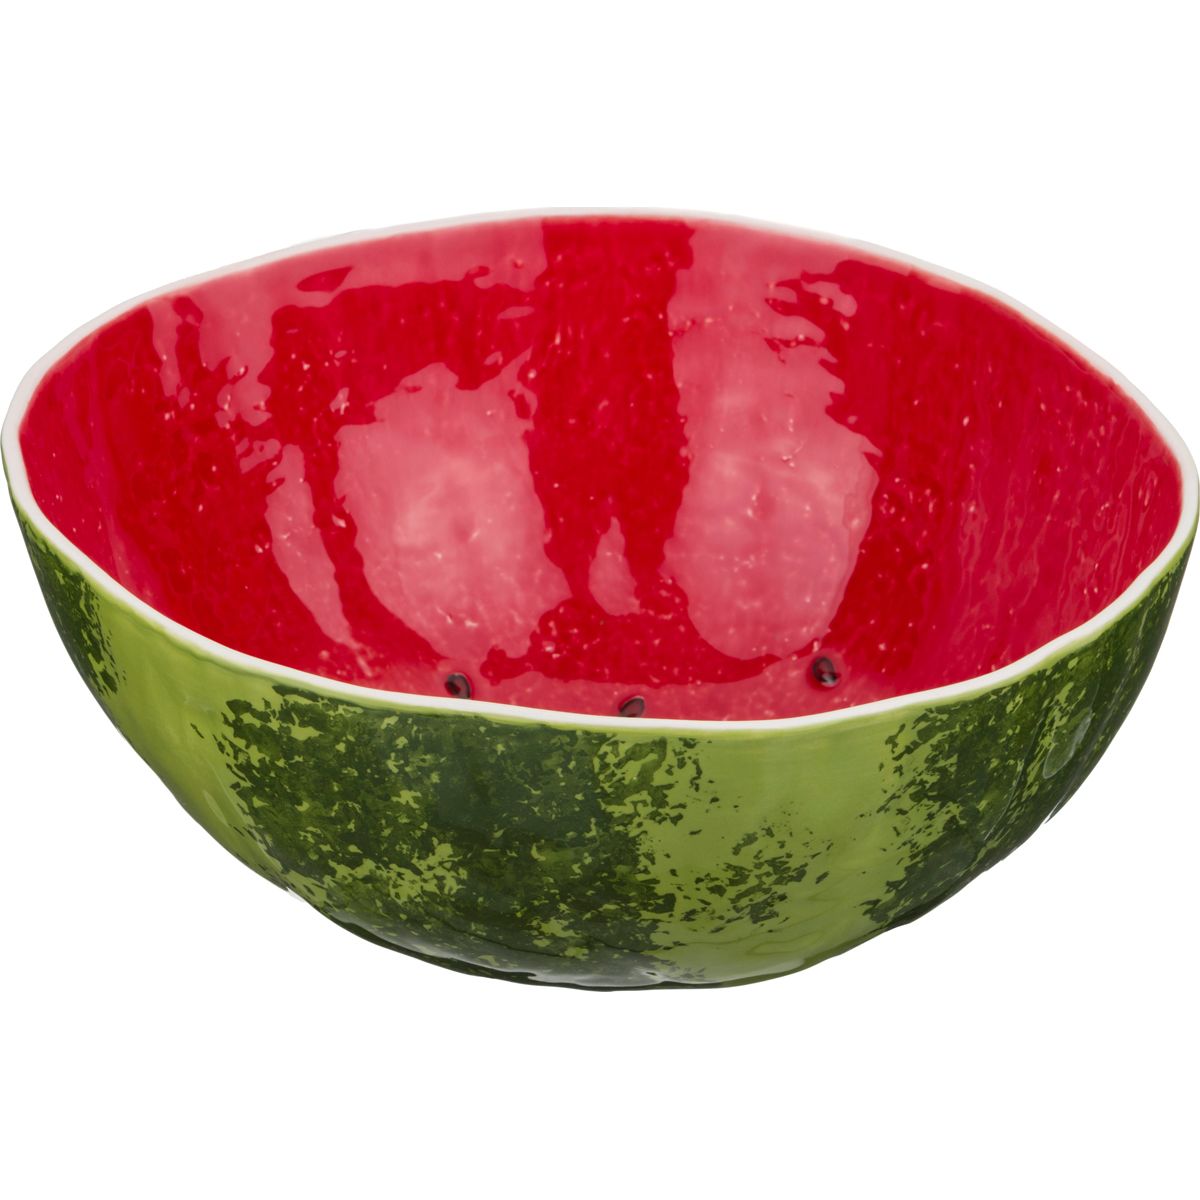  Watermelon S, 28 , 13 , , Bordallo Pinheiro, 